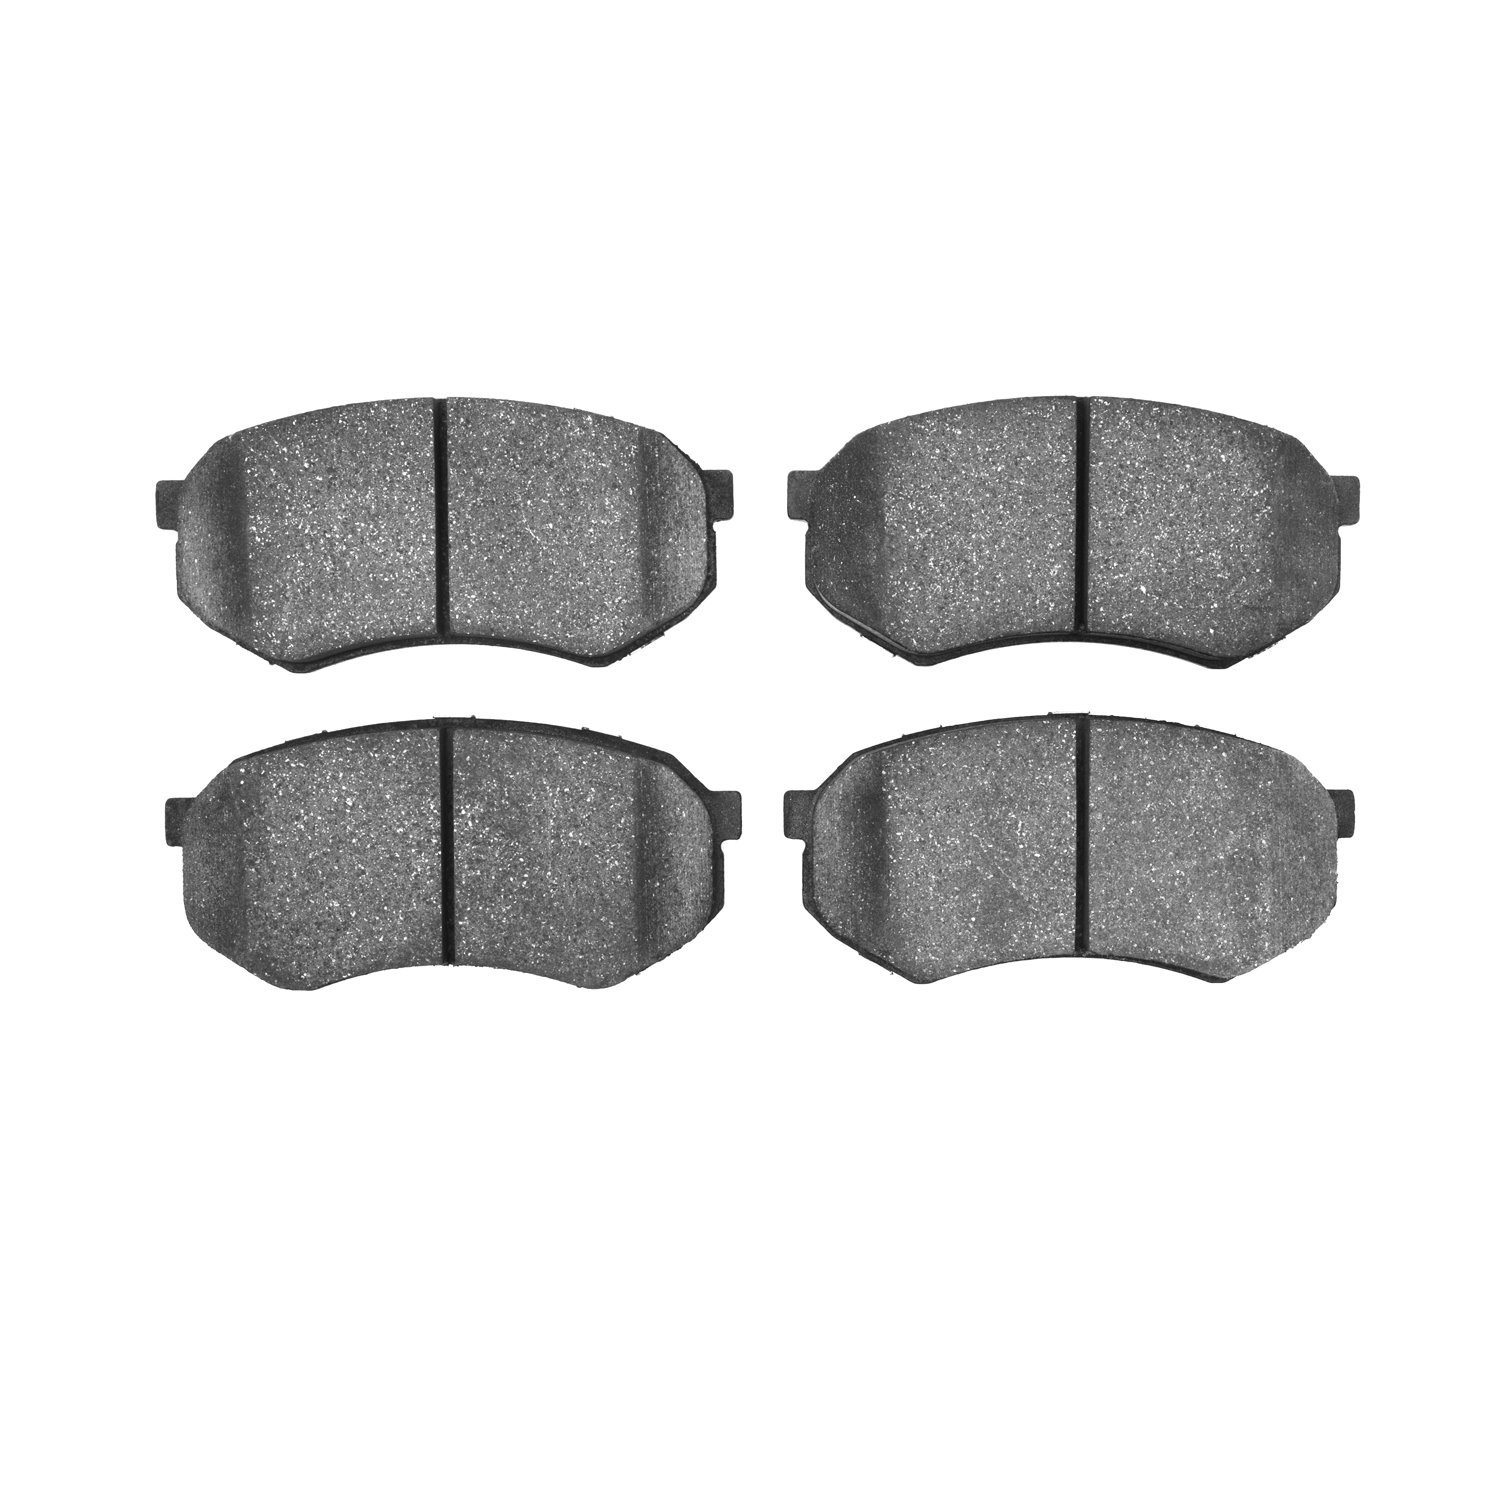 Ceramic Brake Pads, 1989-2005 Fits Multiple Makes/Models, Position: Front